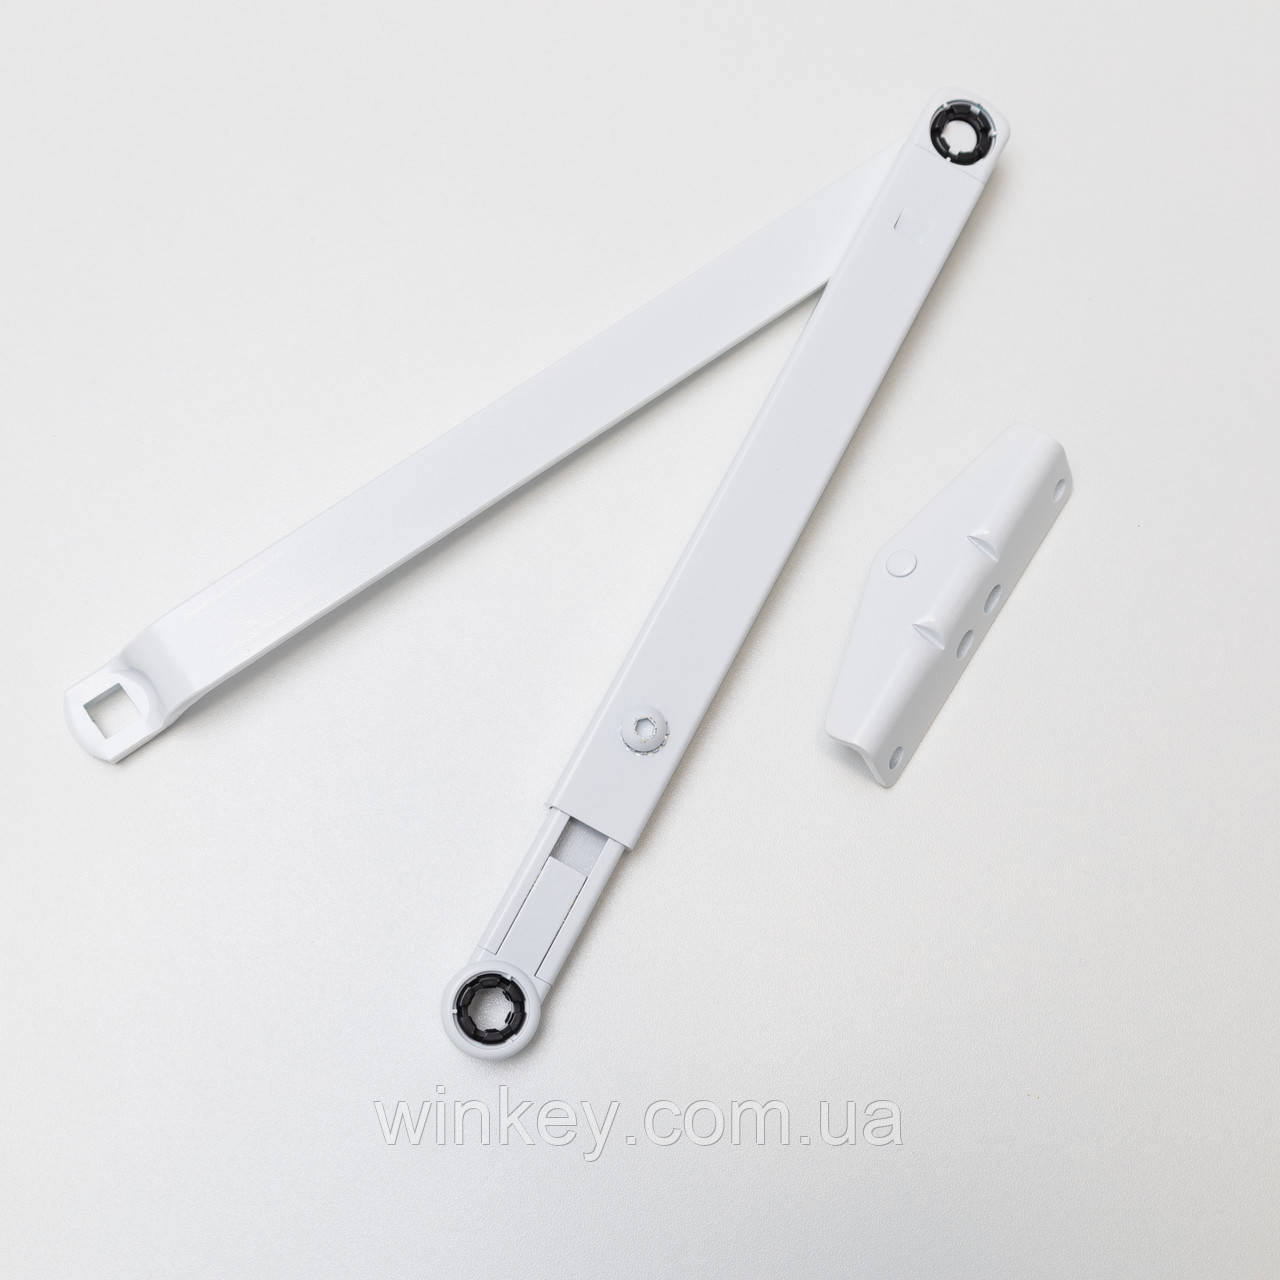 Ножиці для доводчика GU OTS 430 білі